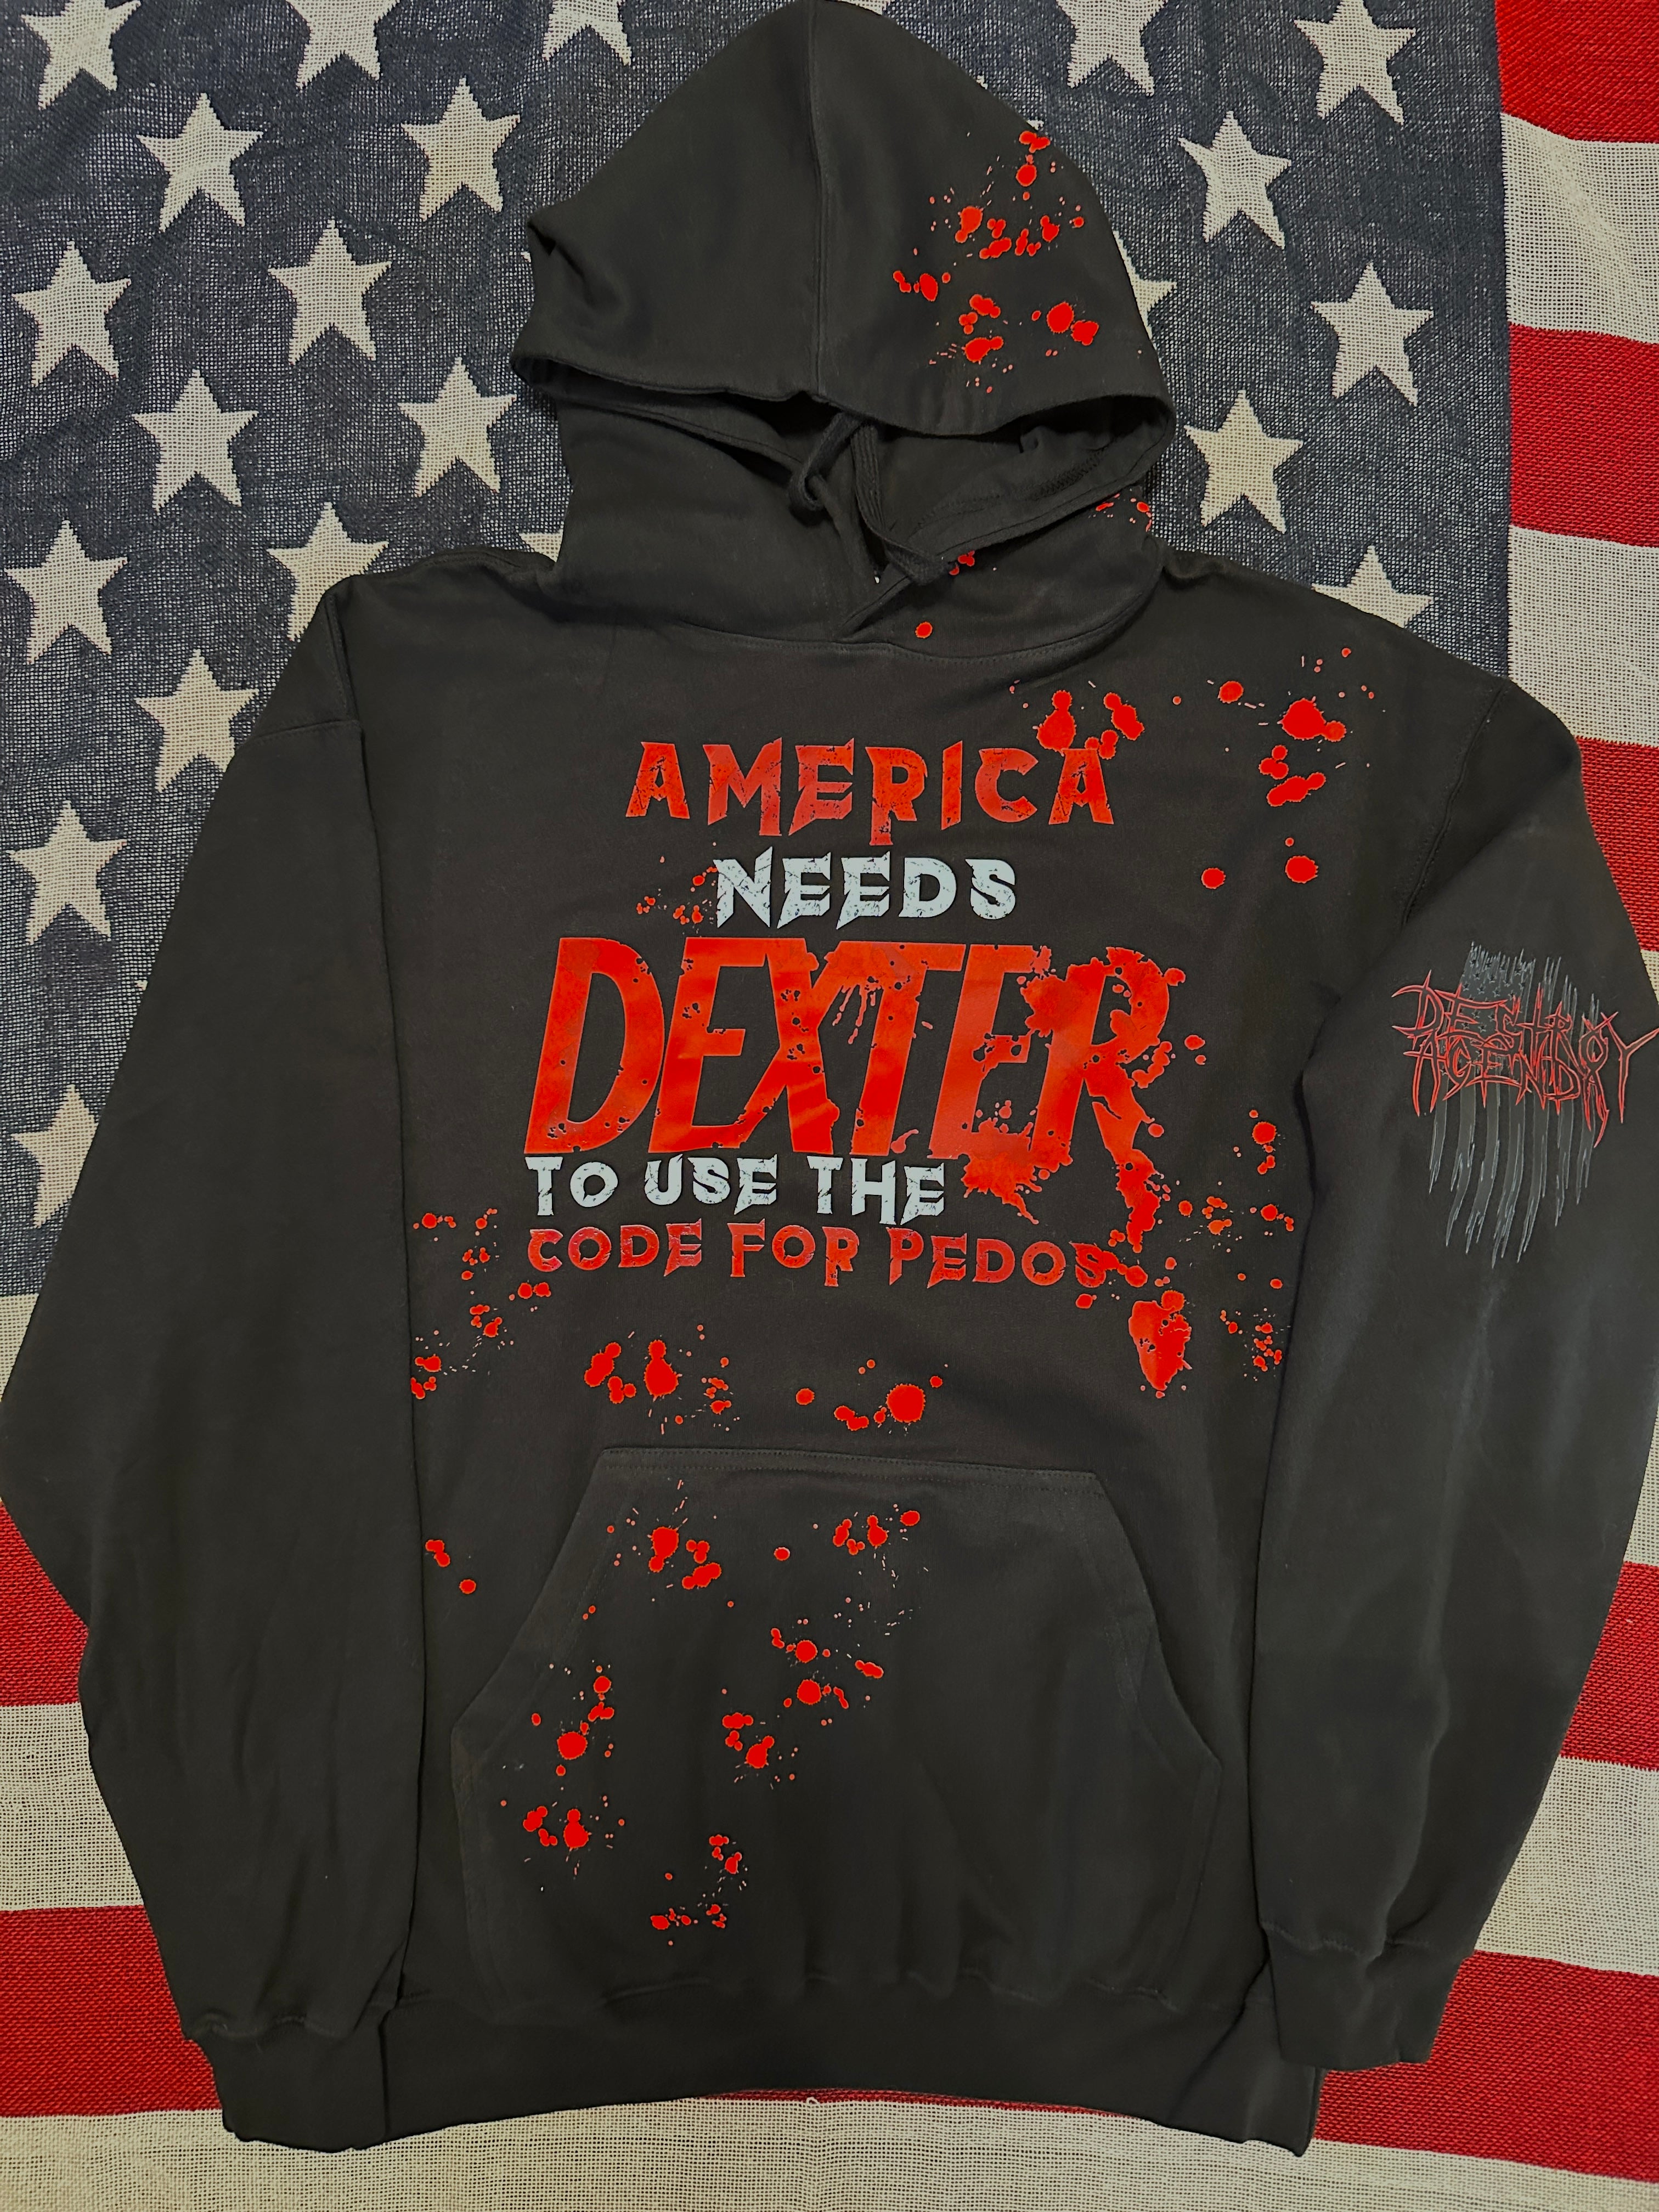 America needs Dexter